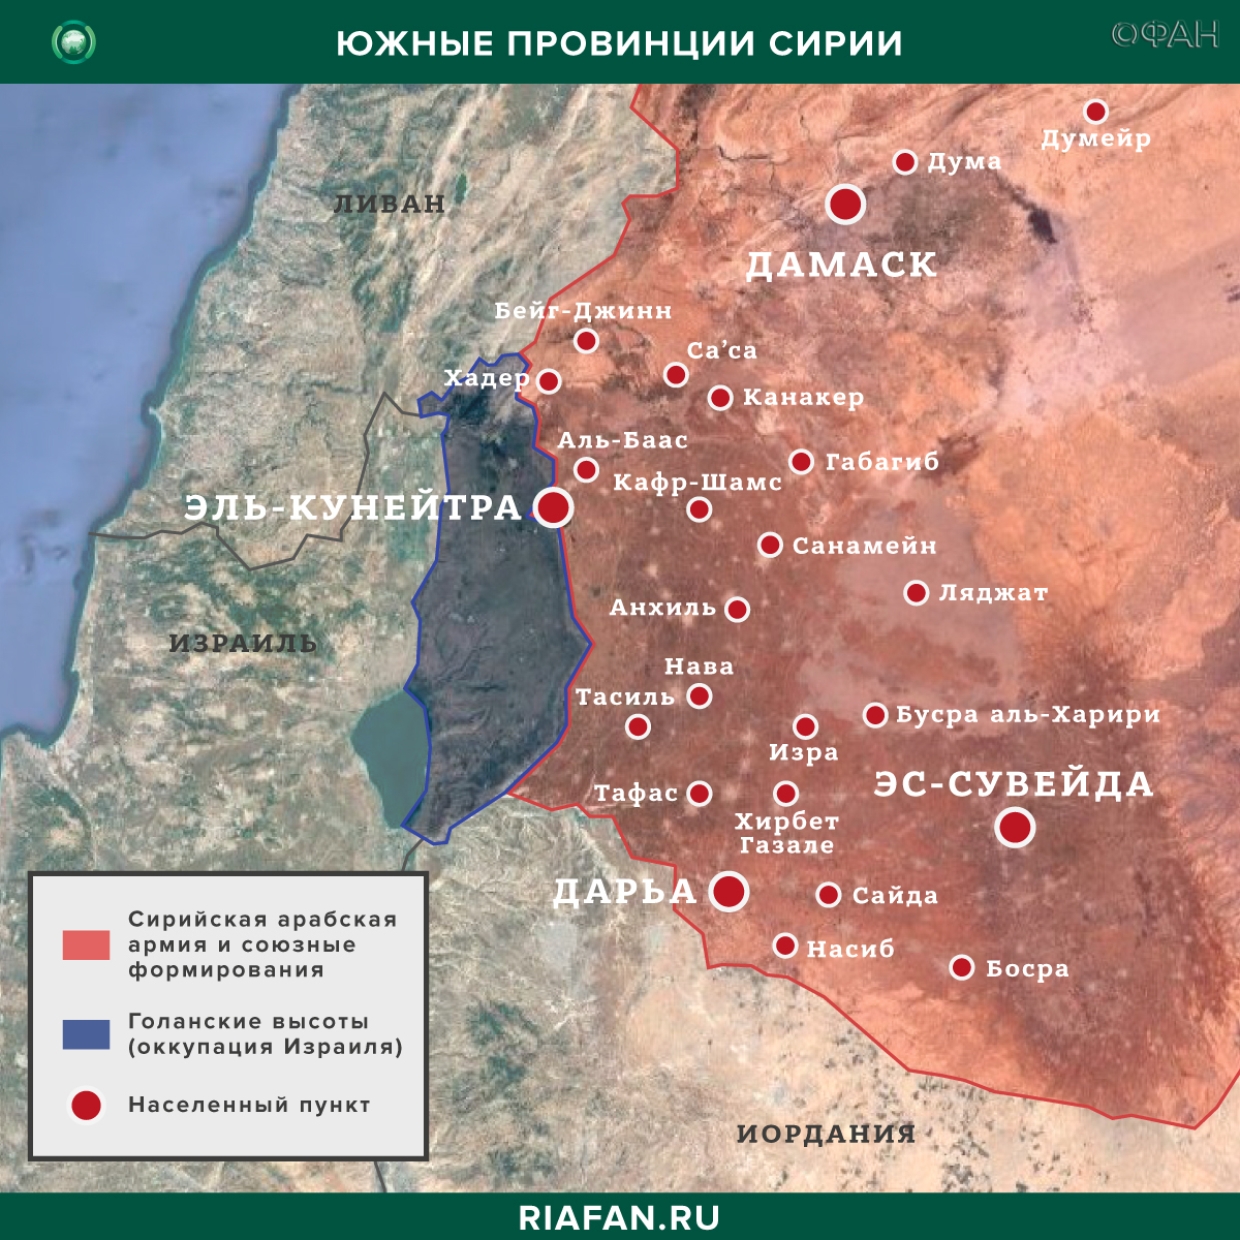 Noticias de Siria 1 Marzo 19.30: сирийские системы ПВО будут сбивать все вражеские цели над Идлибом, провокации боевиков в Даръа